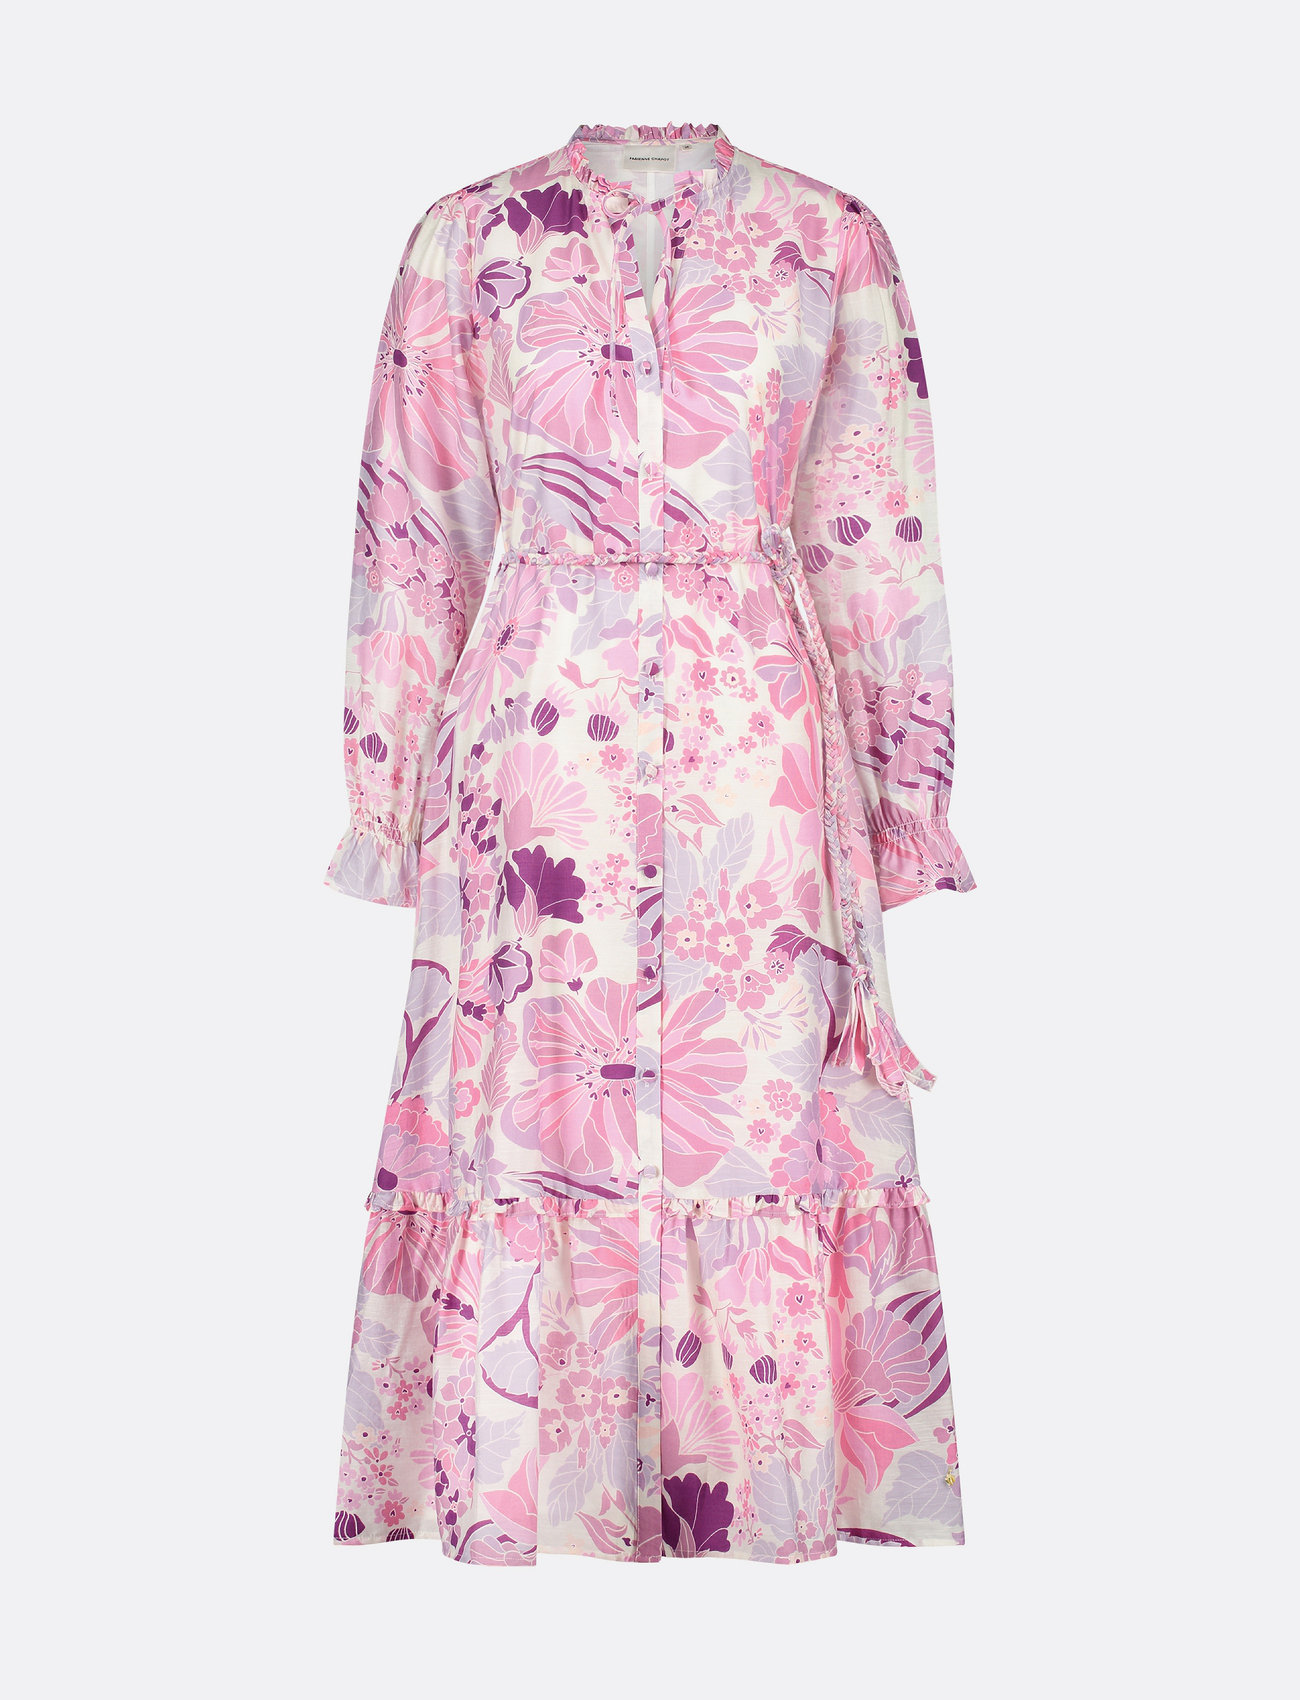 Fabienne Chapot - Marilene Dress - odzież imprezowa w cenach outletowych - warm white/pink cand - 0